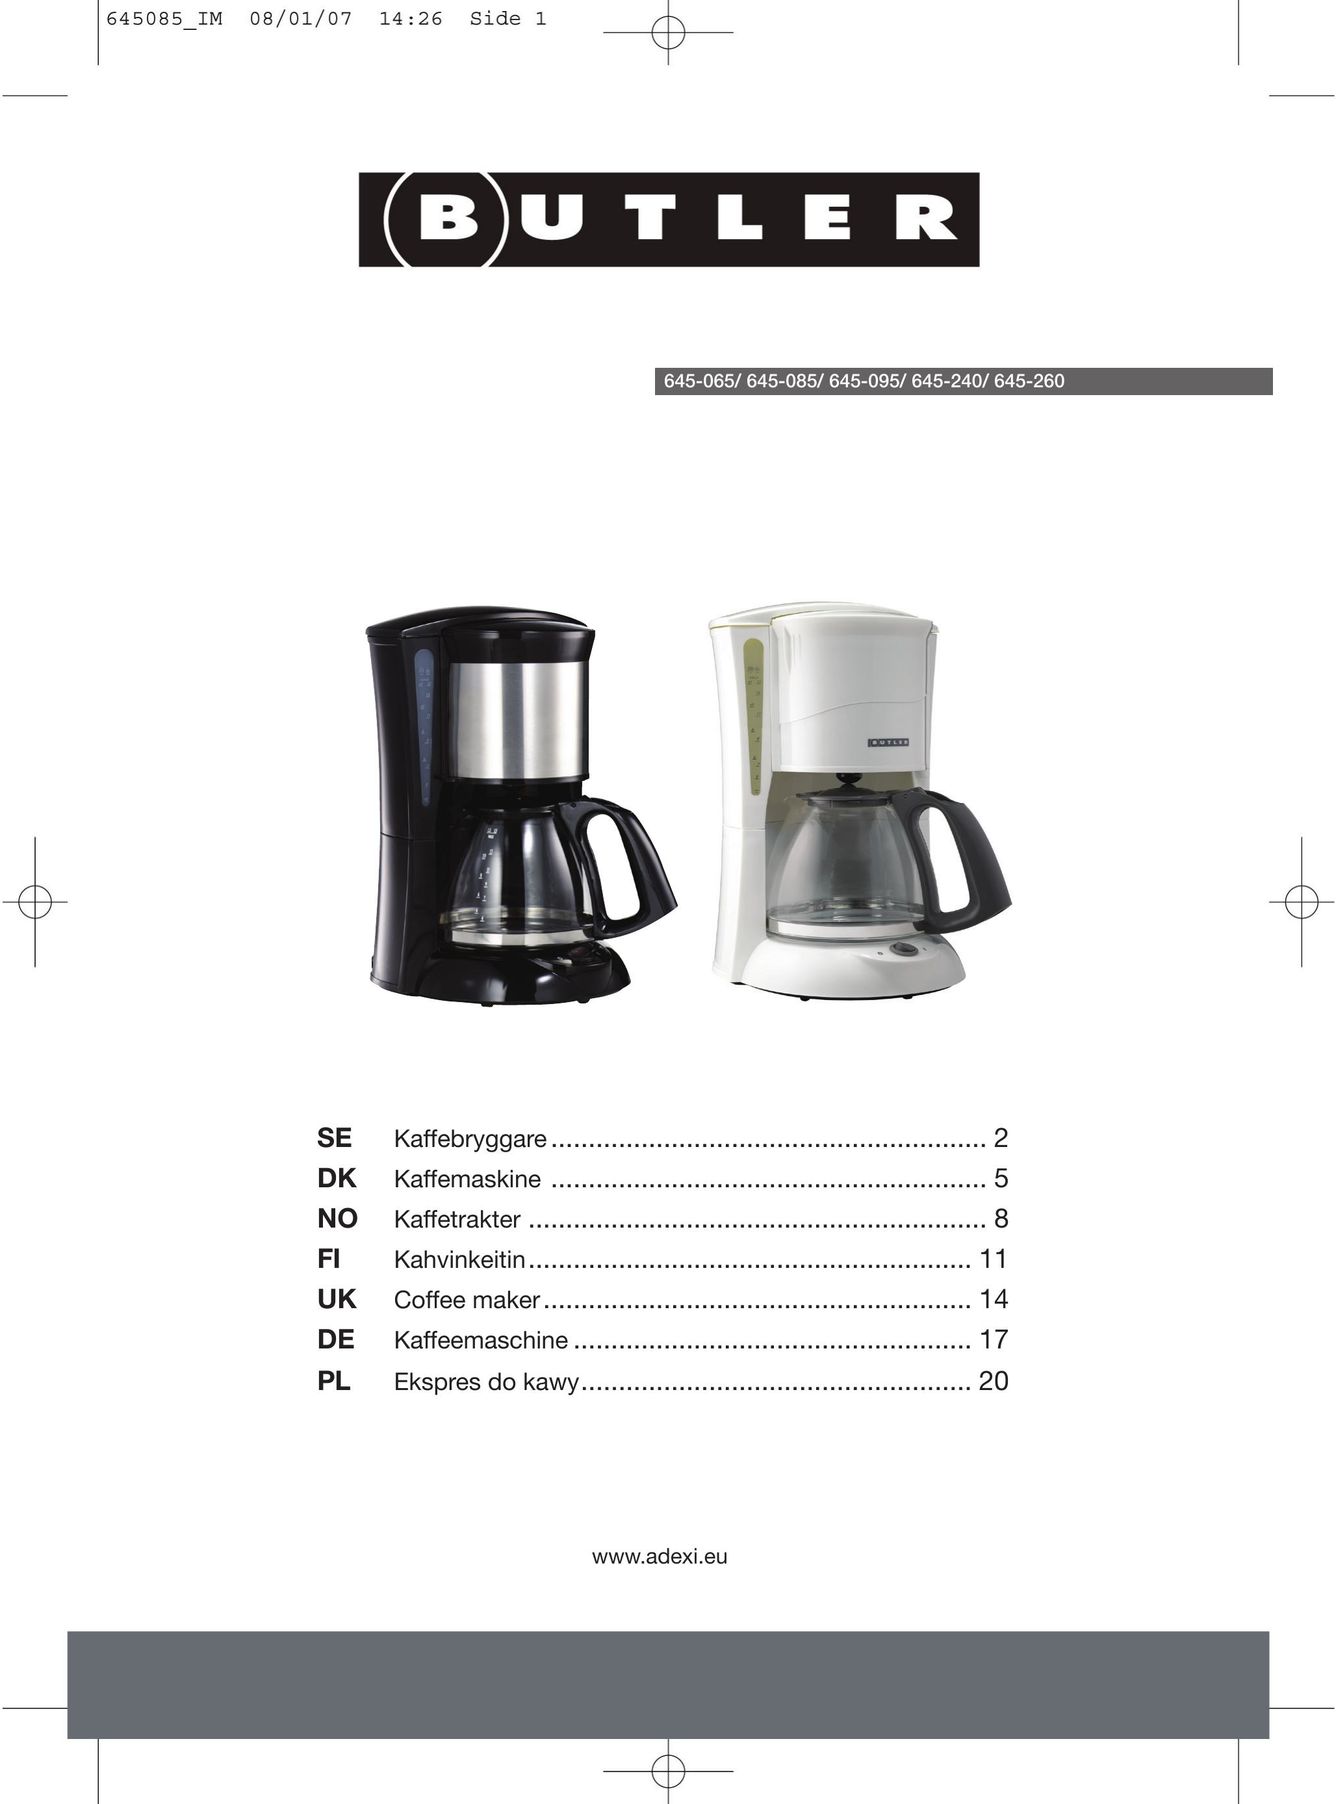 Butler 645-260 Coffeemaker User Manual